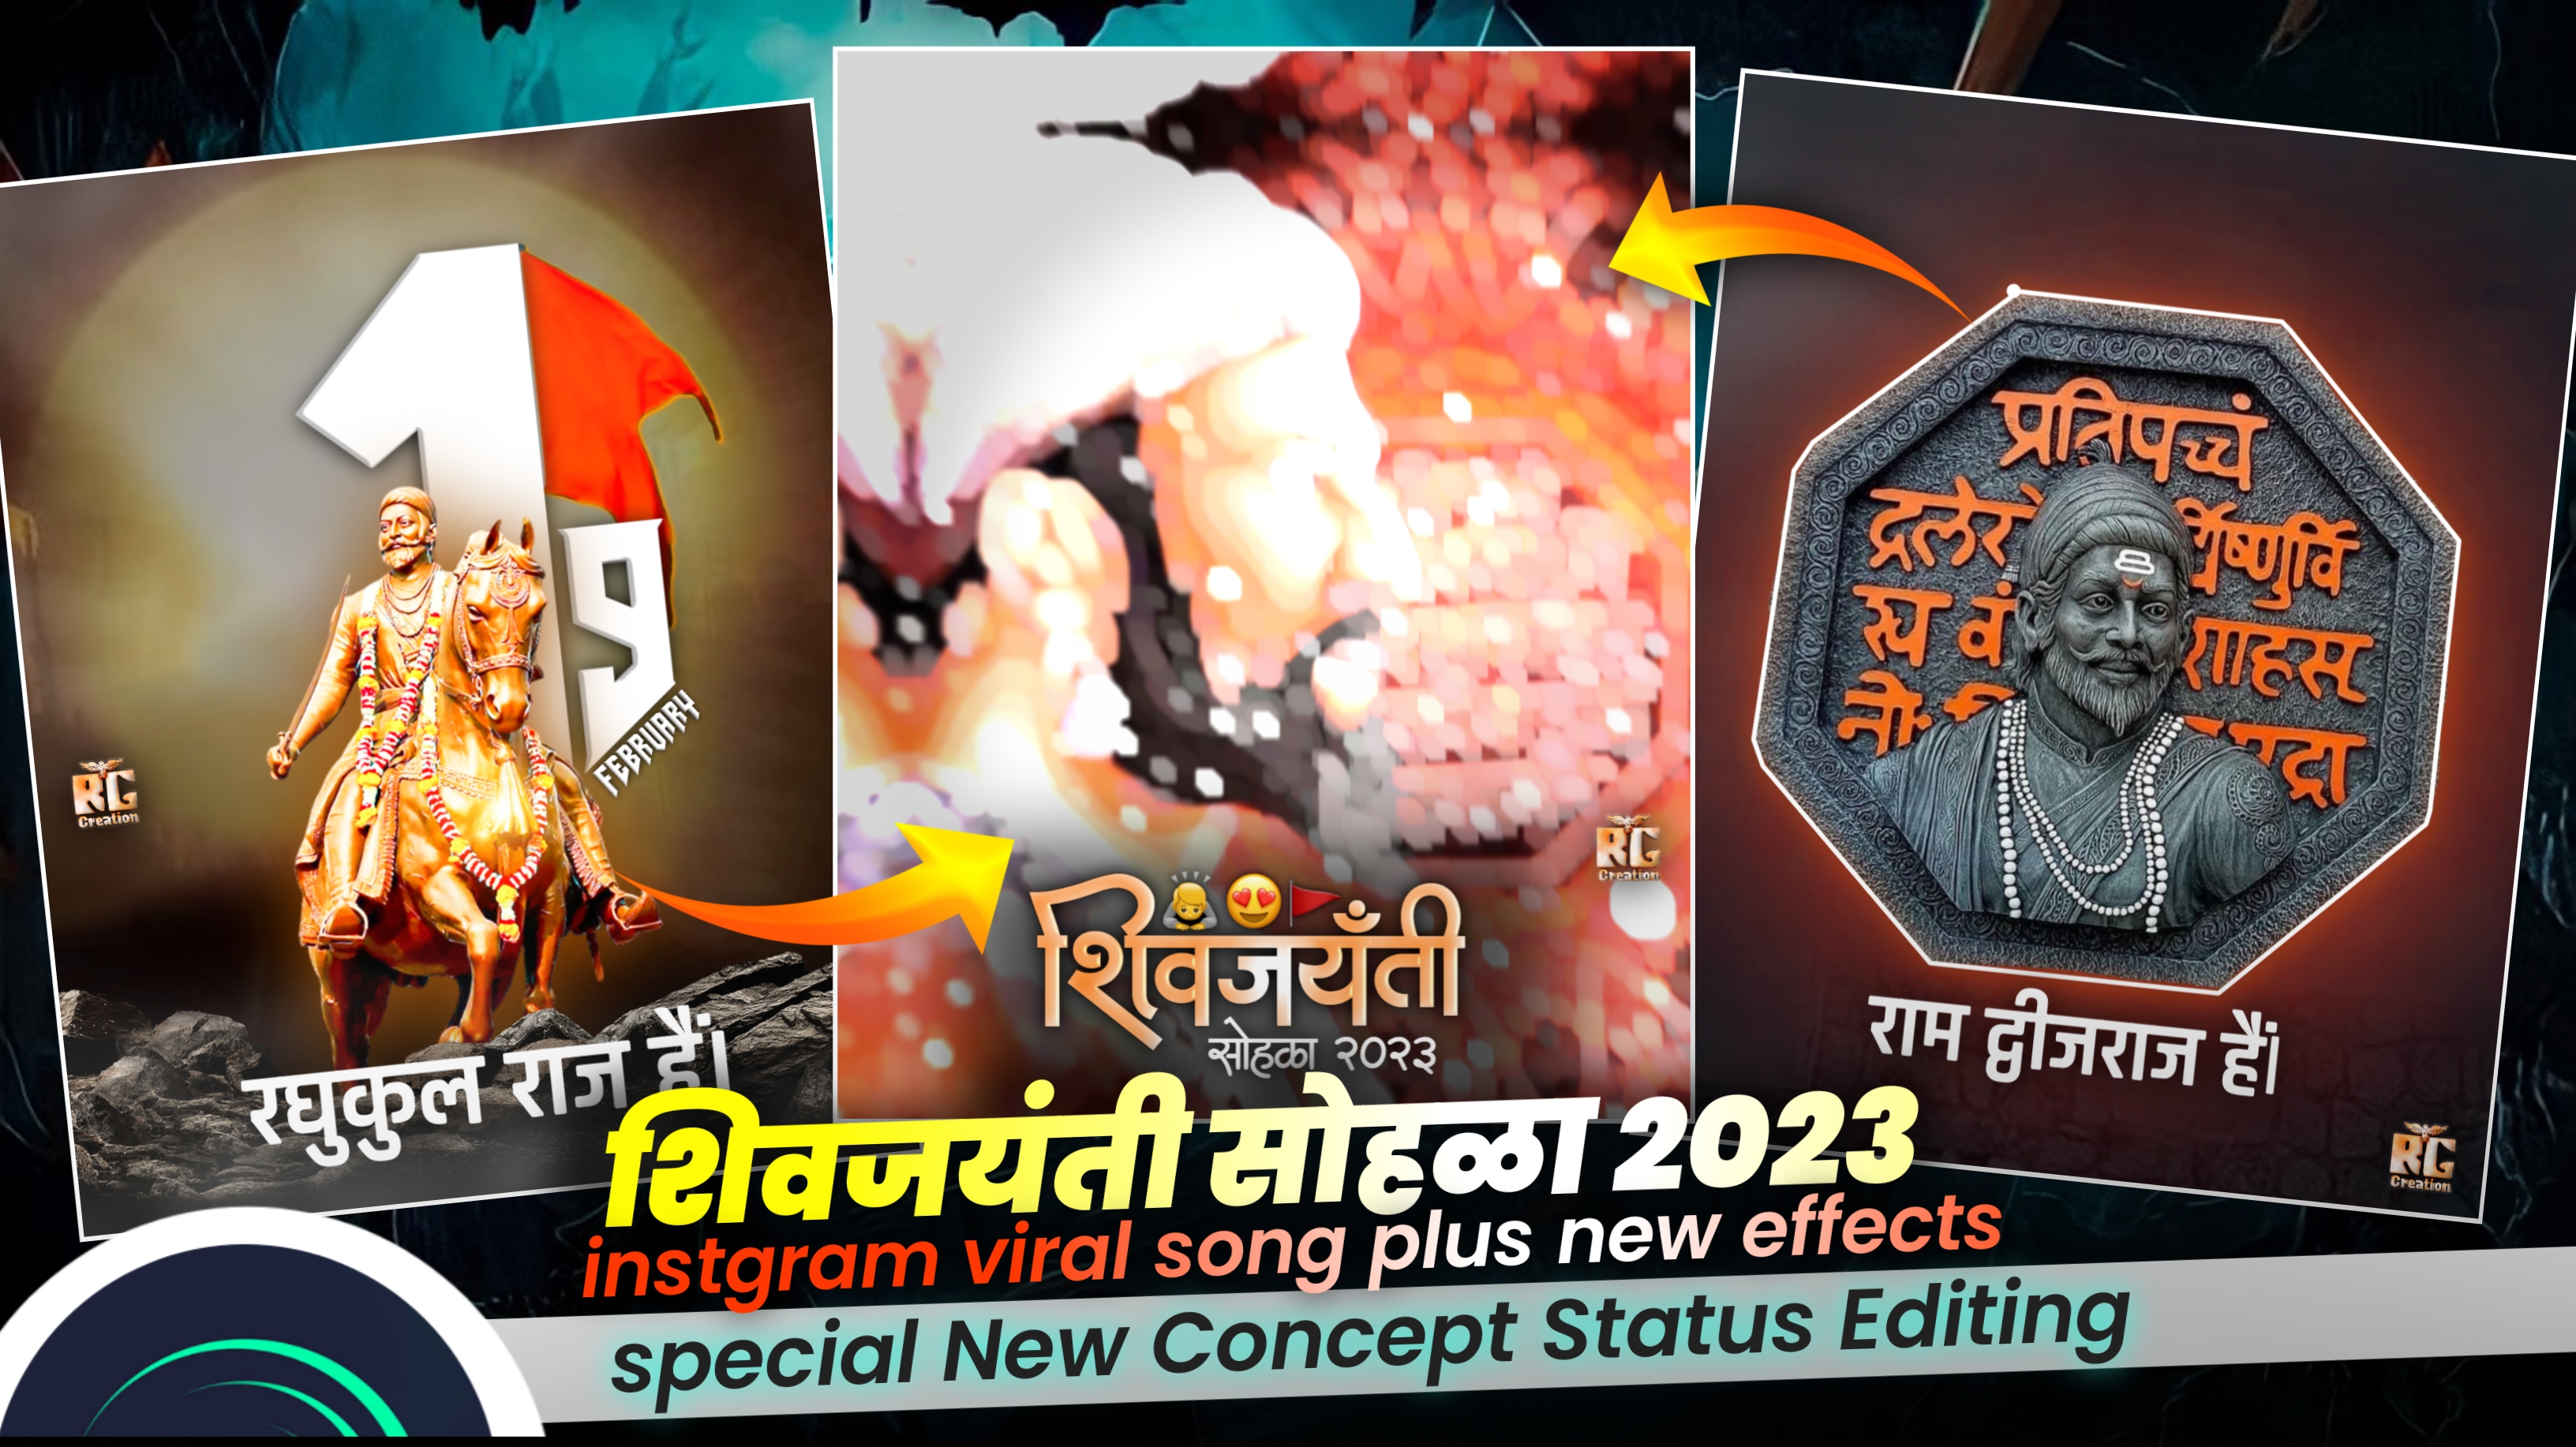 Chatrapati Shivaji Maharaj Jayanti Status Editing 2023 in Alight Motion